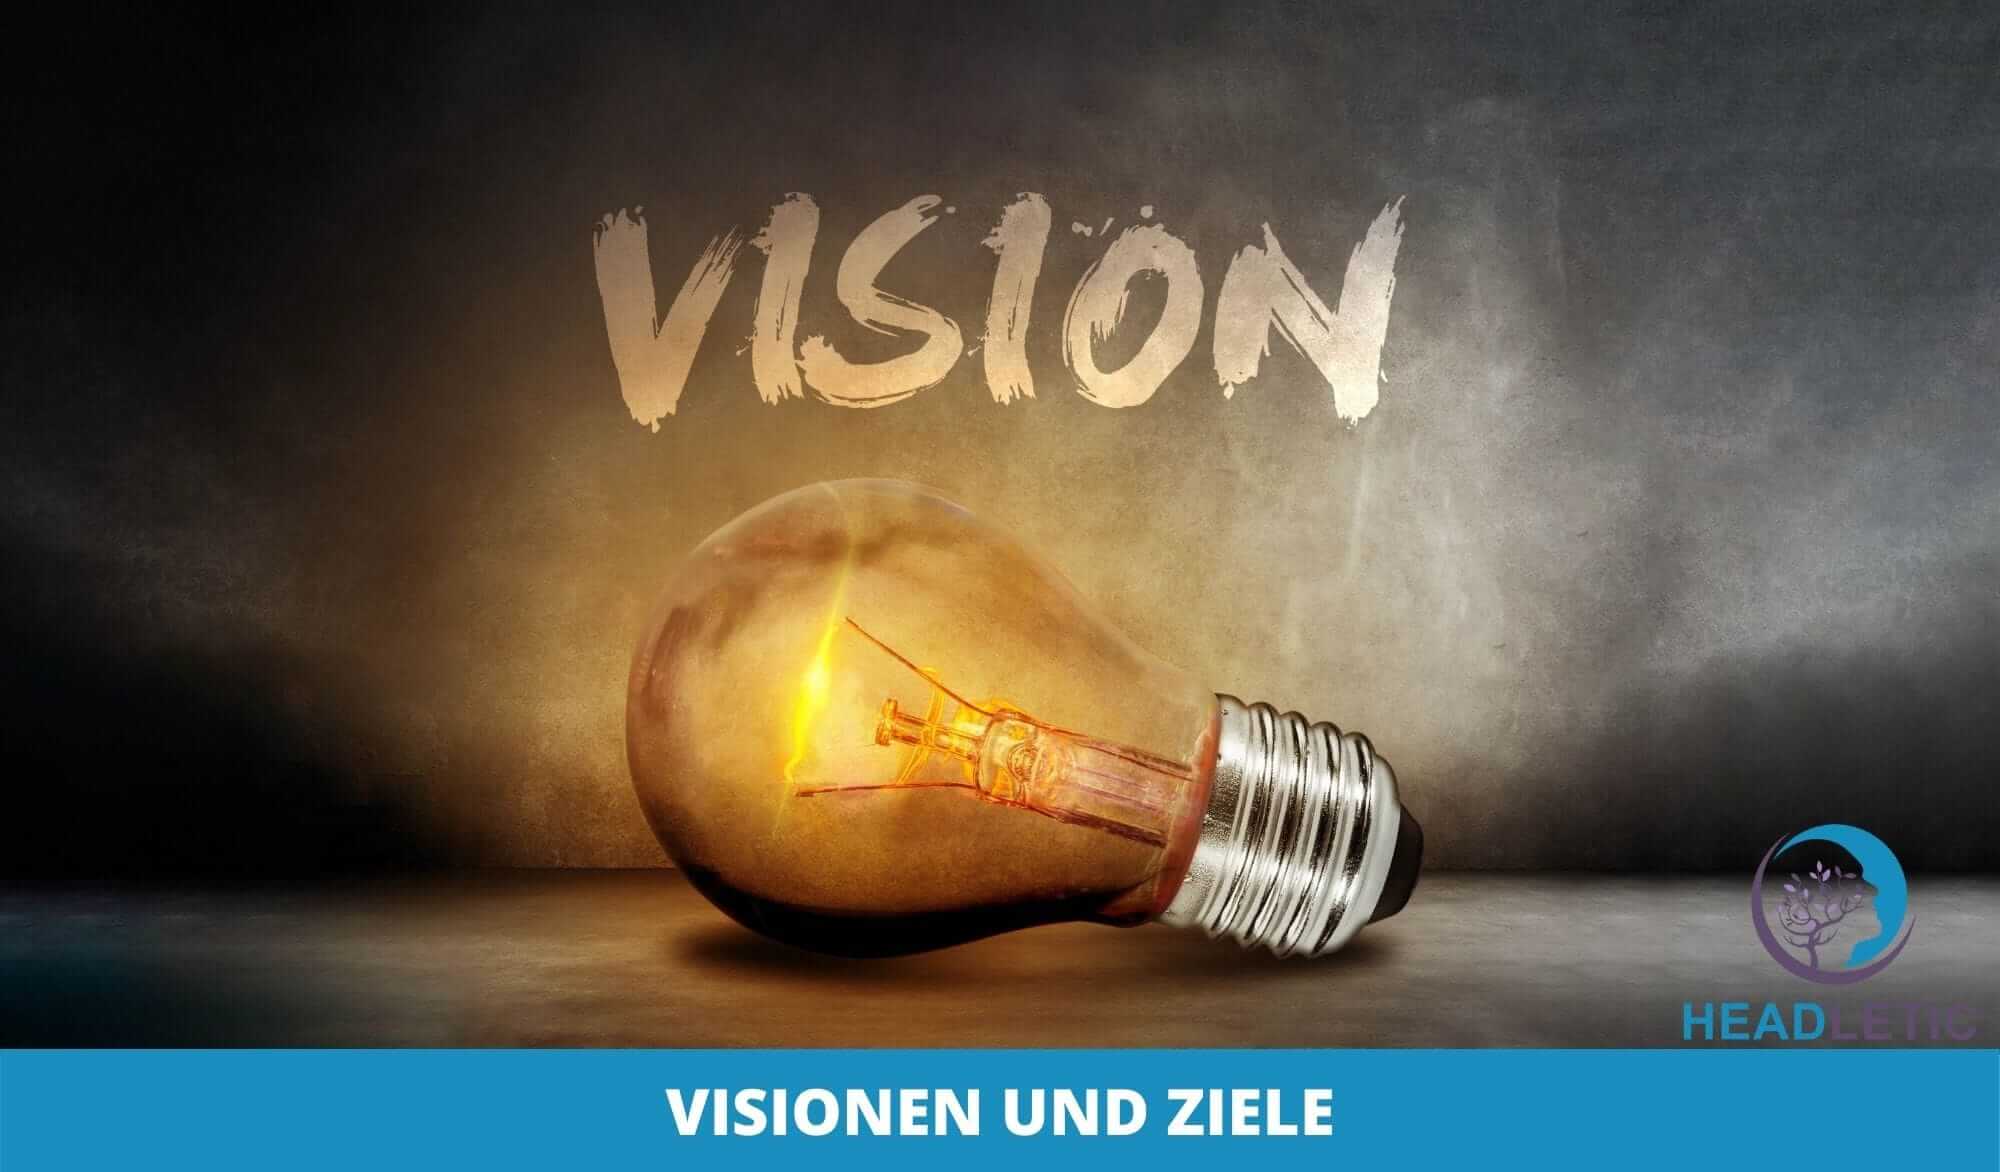 Vision Board - Setze dir Ziele und habe Visionen